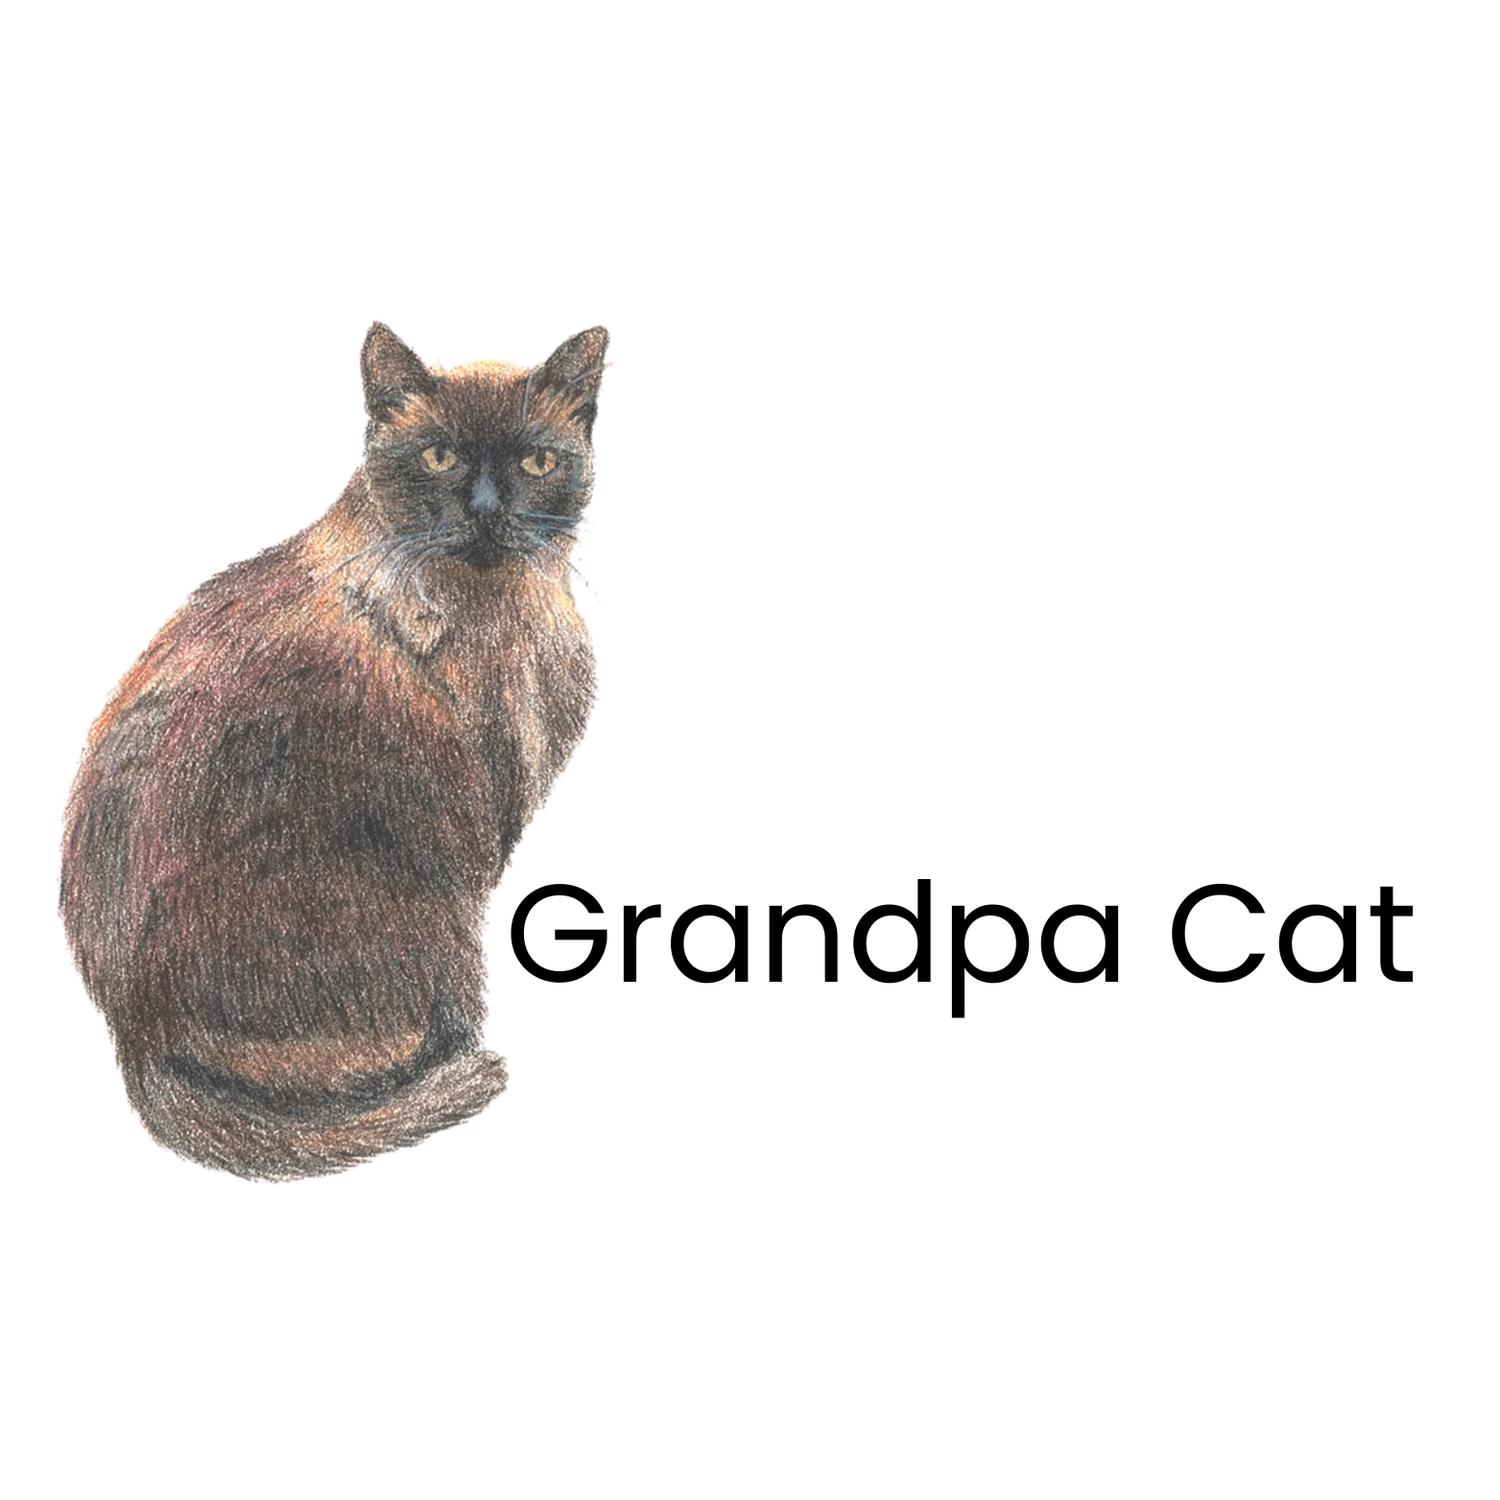 Grandpa Cat